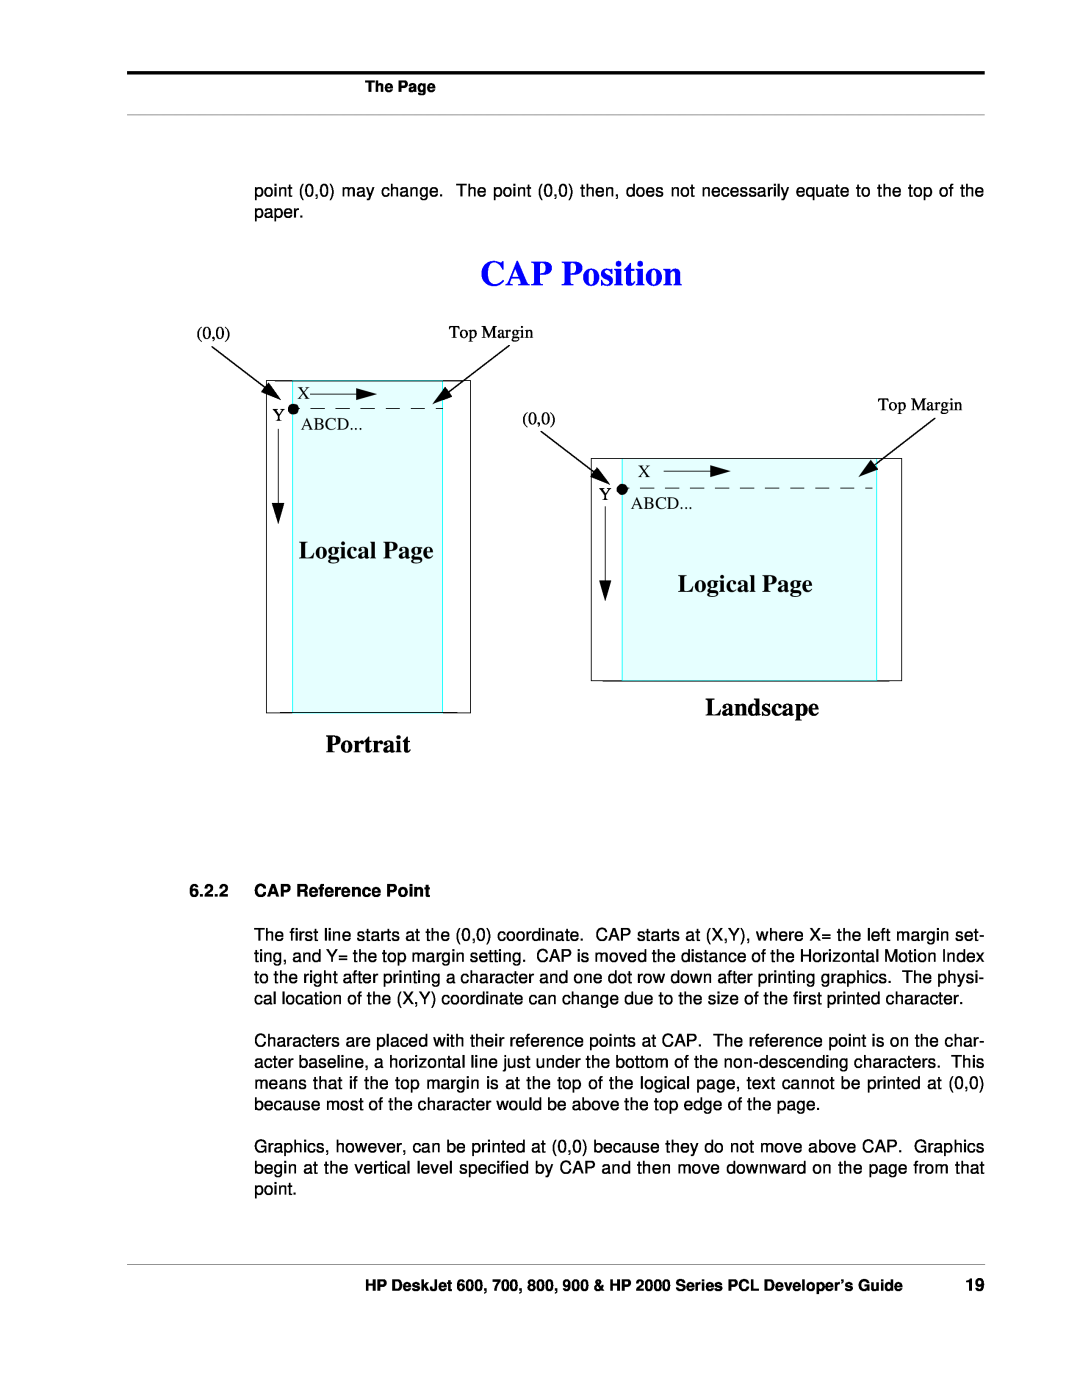 HP 700, 800 manual CAP Position, Logical Page, Portrait, Landscape, CAP Reference Point 